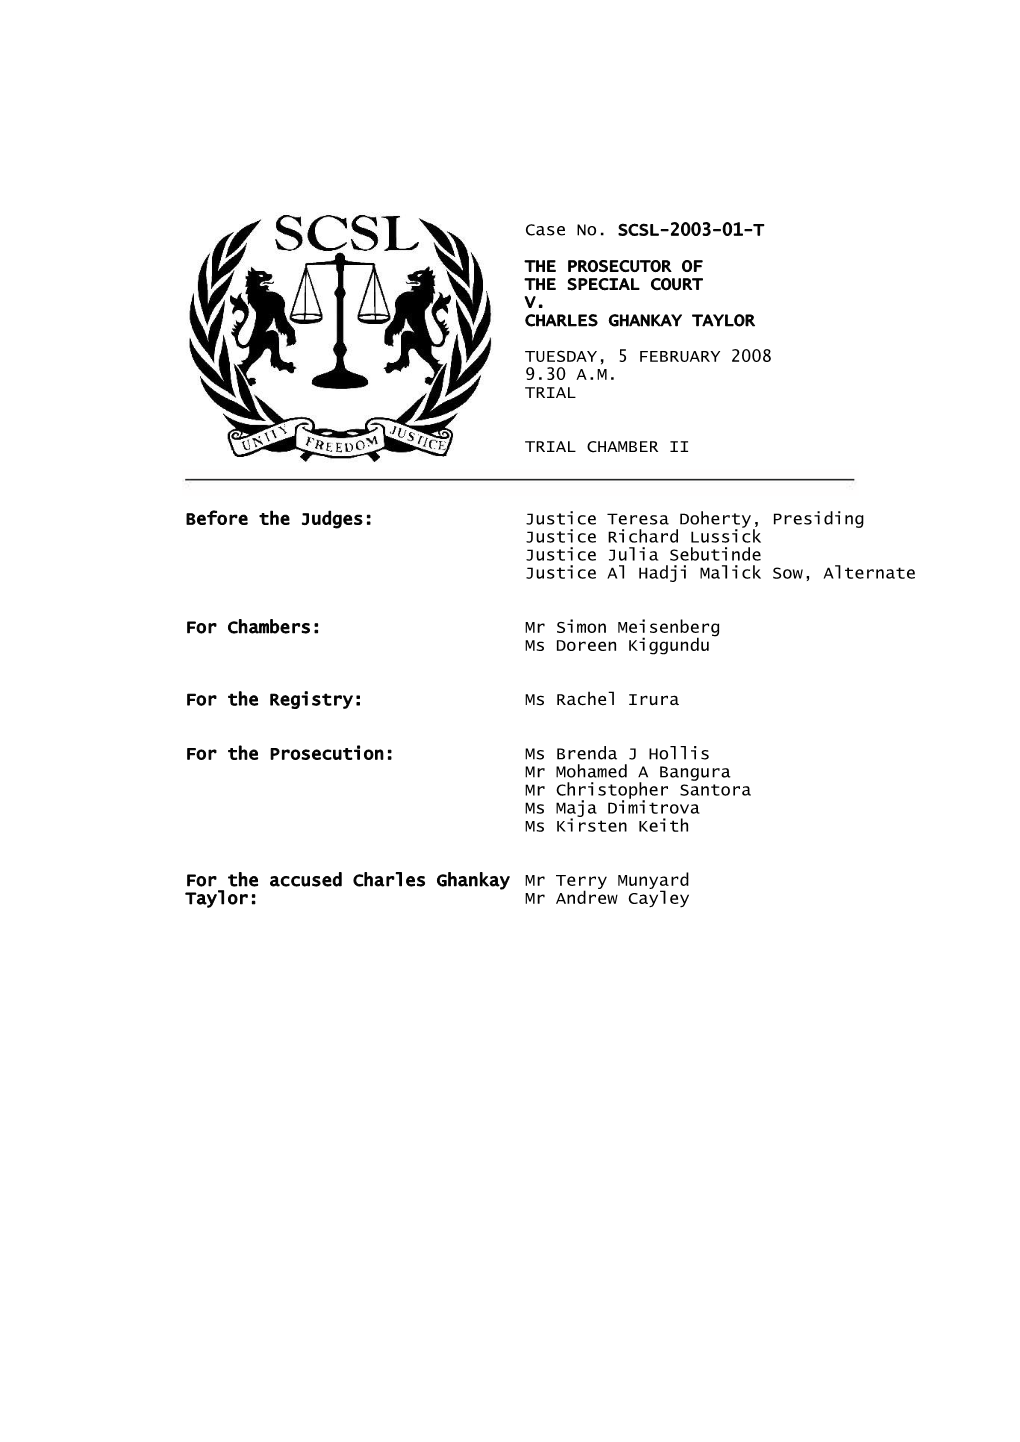 Taylor Trial Transcript